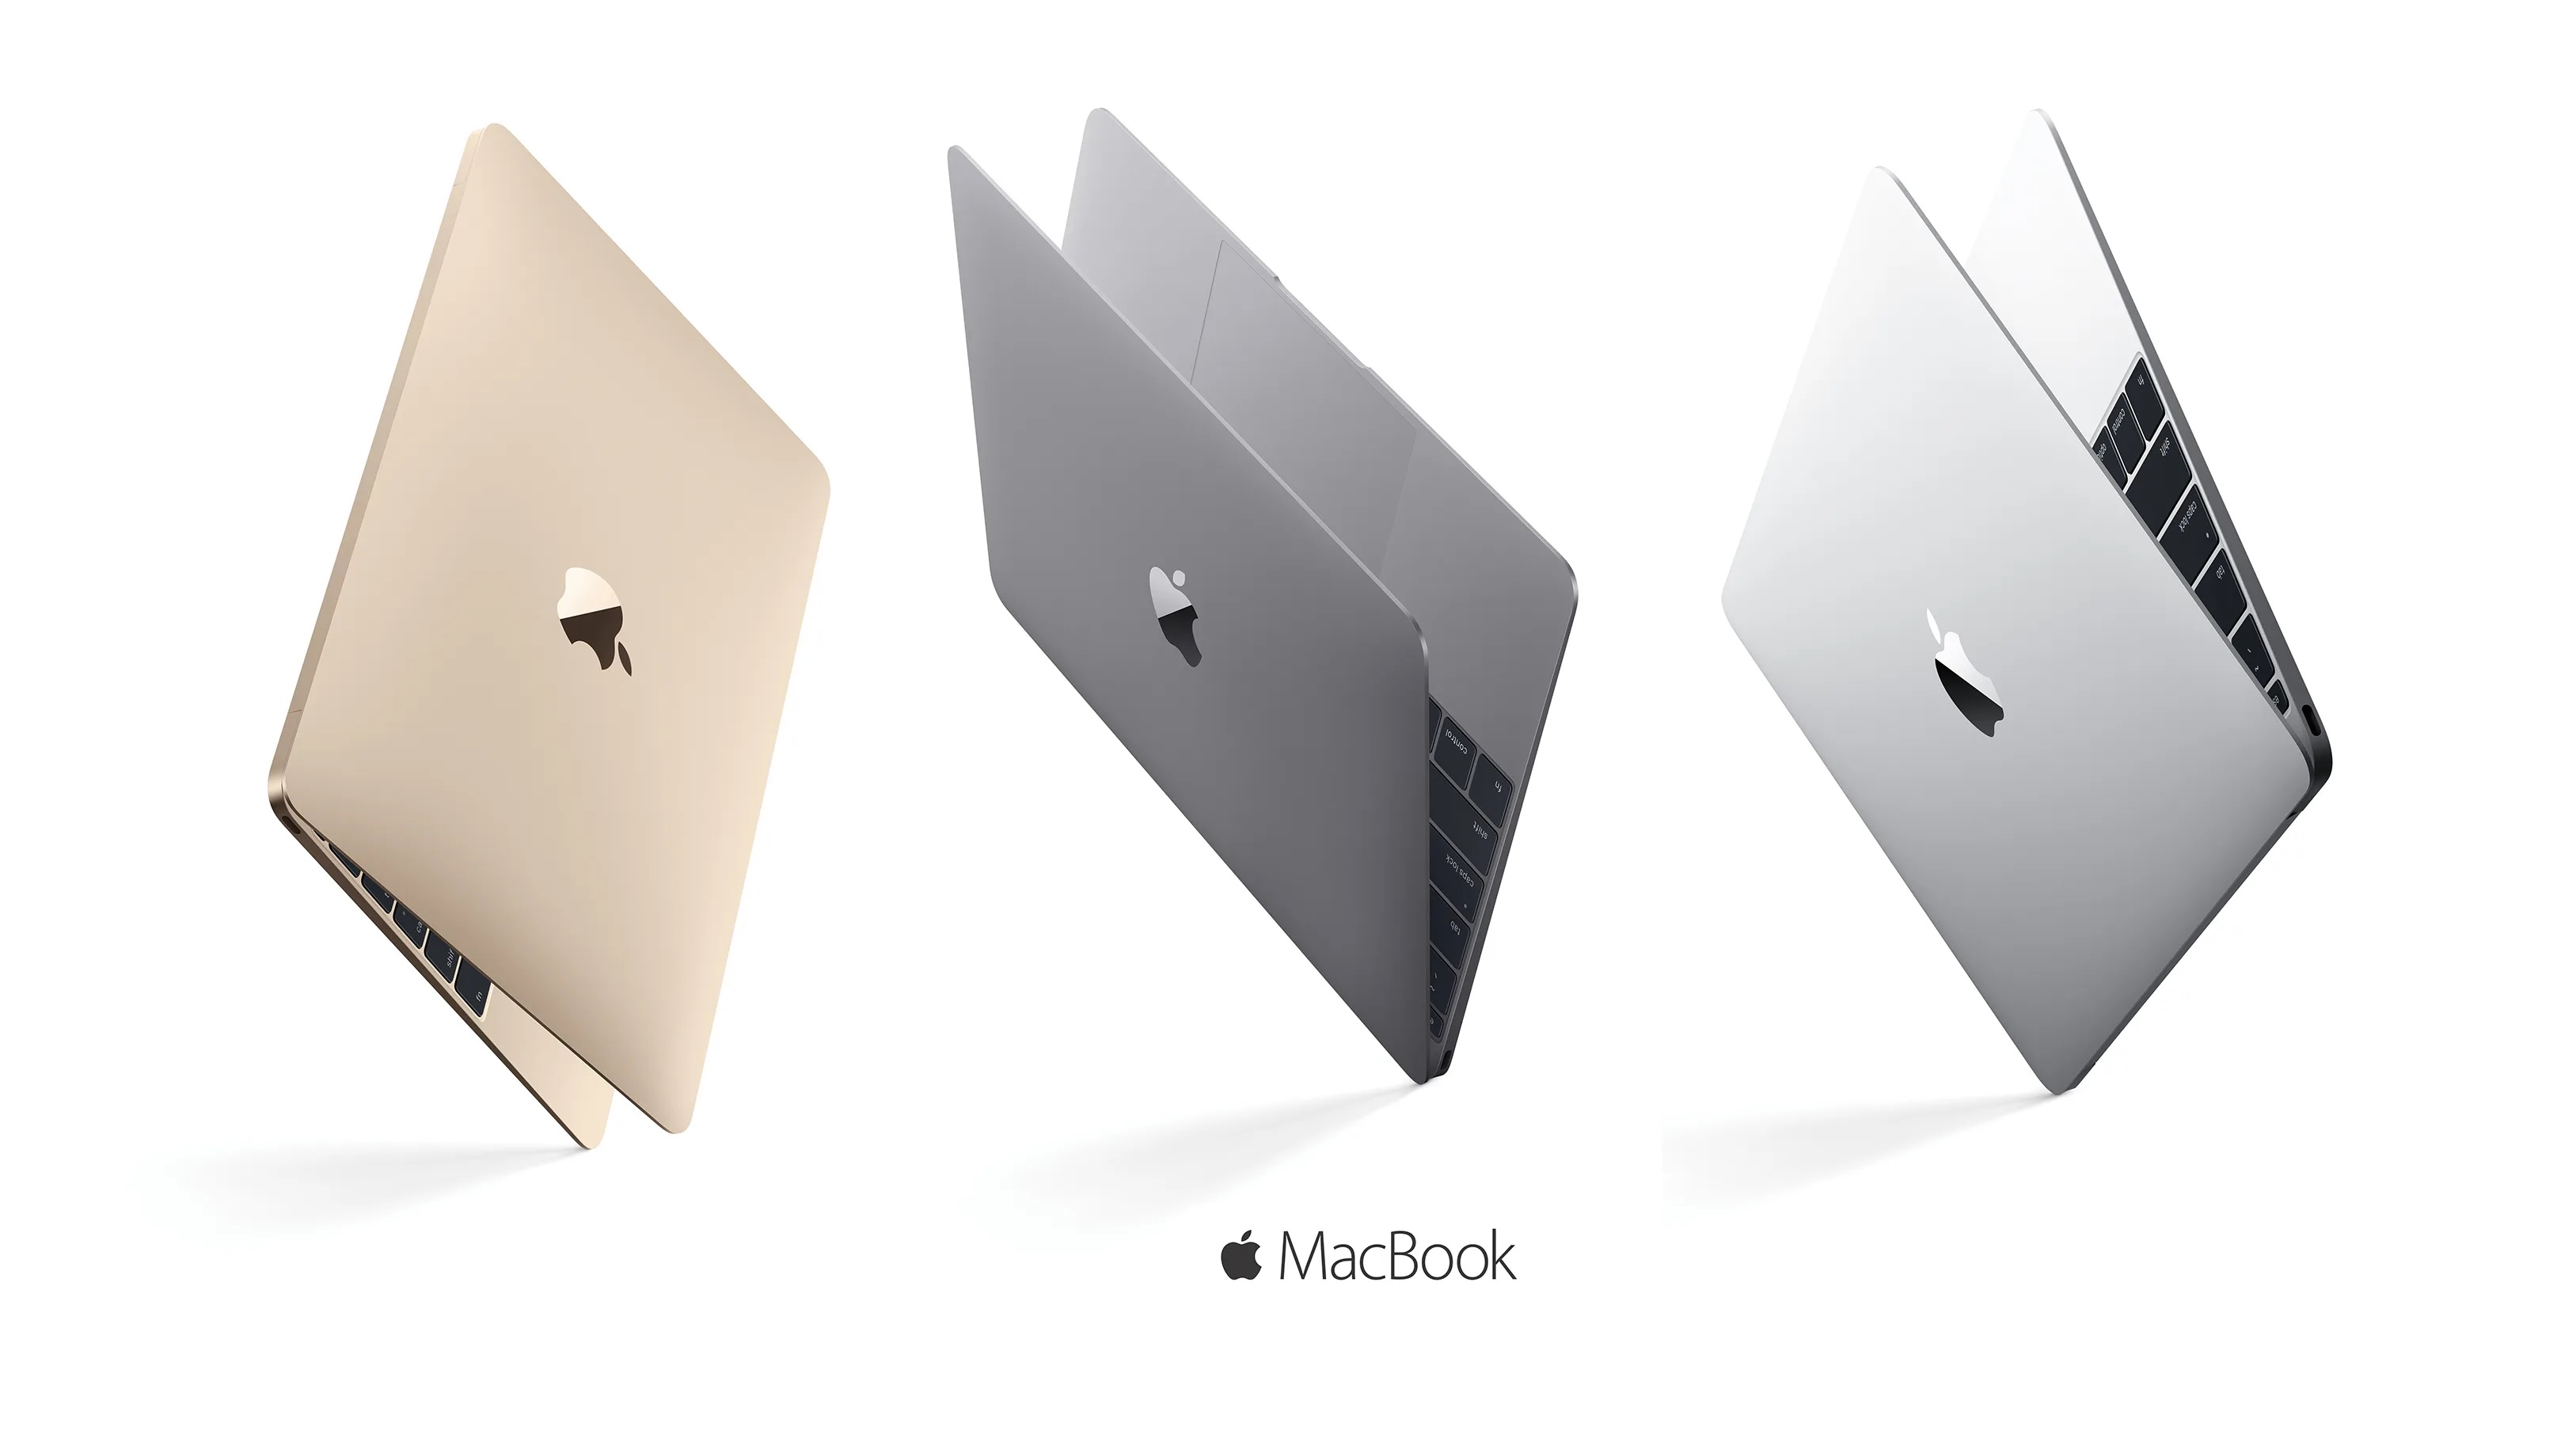 Acht jaar na de release: Apple erkent dat de originele 12-inch MacBook een volledig verouderd product is